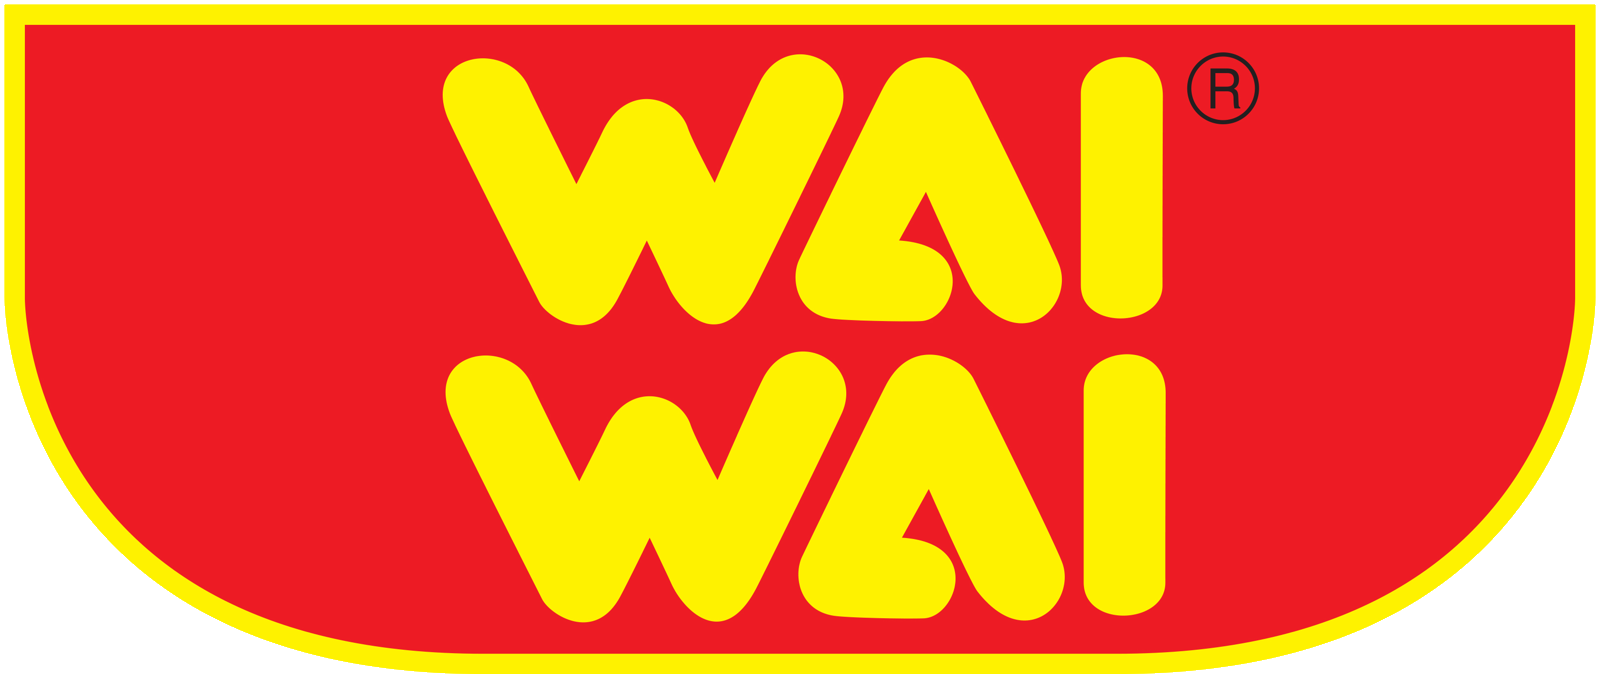 WaiWai